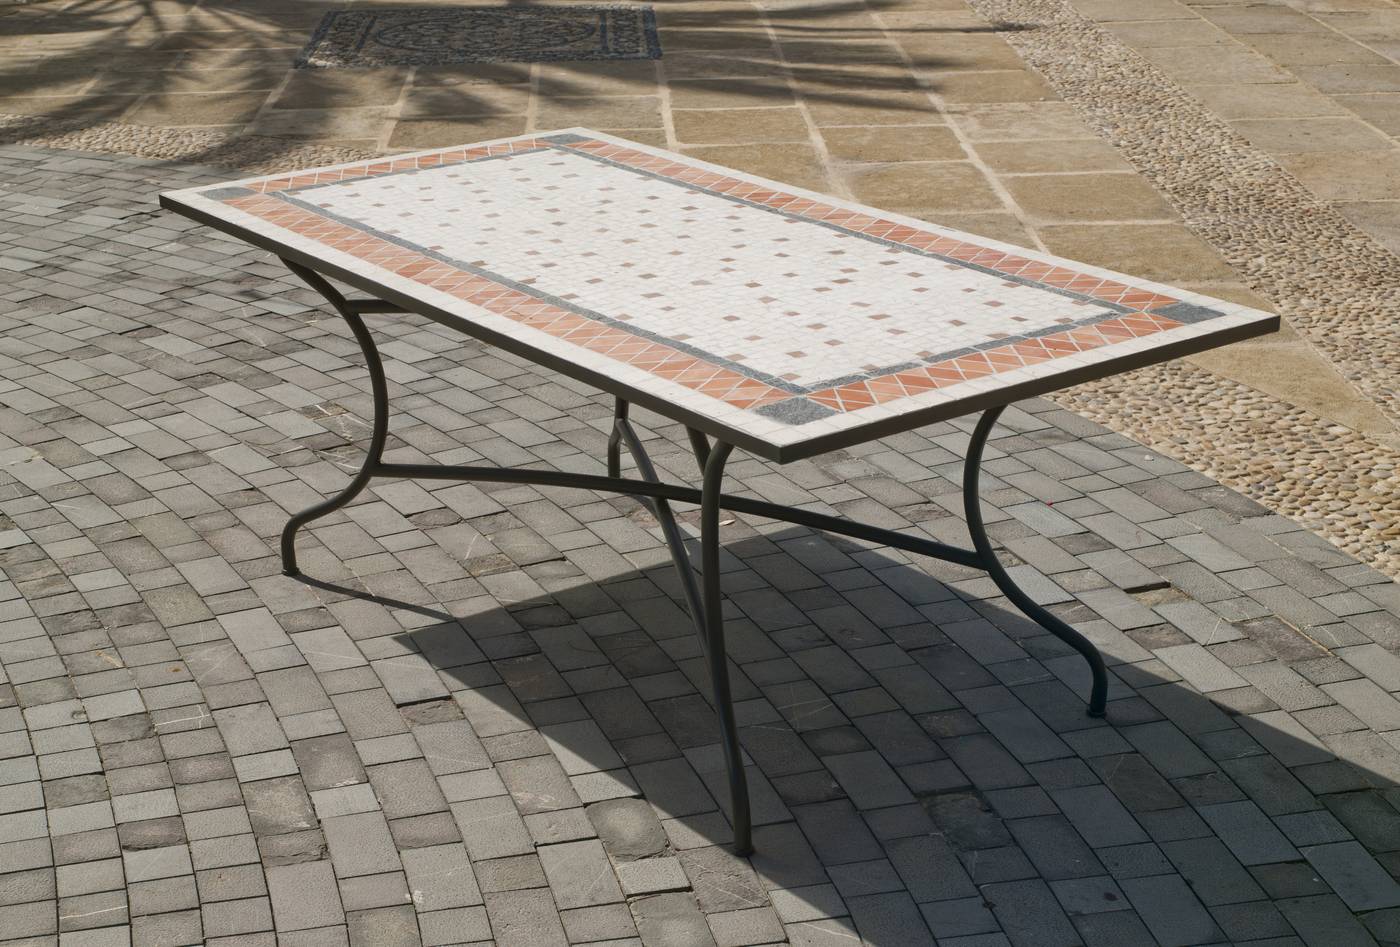 Set Mosaico Roland/Vigo-200 - Conjunto para terraza o jardín de forja color bronce: 1 mesa con  tablero mosaico extra resistente + 8 sillones con cojín.